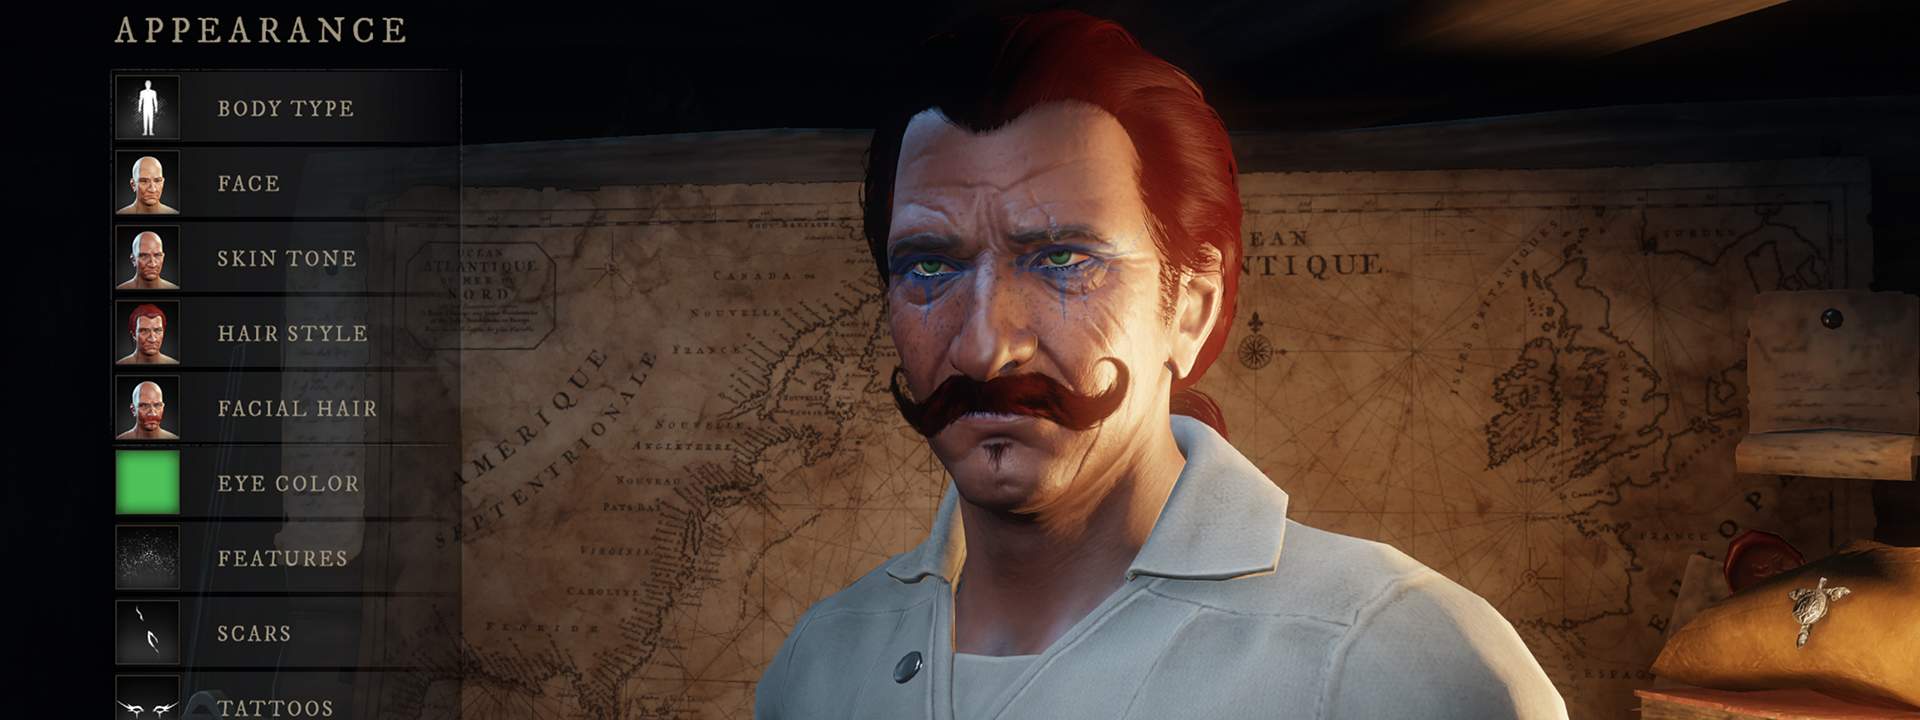 Снимок экрана интерфейса настройки персонажа, на котором изображен человек с темной кожей, синими татуировками под глазами и усами на руле.